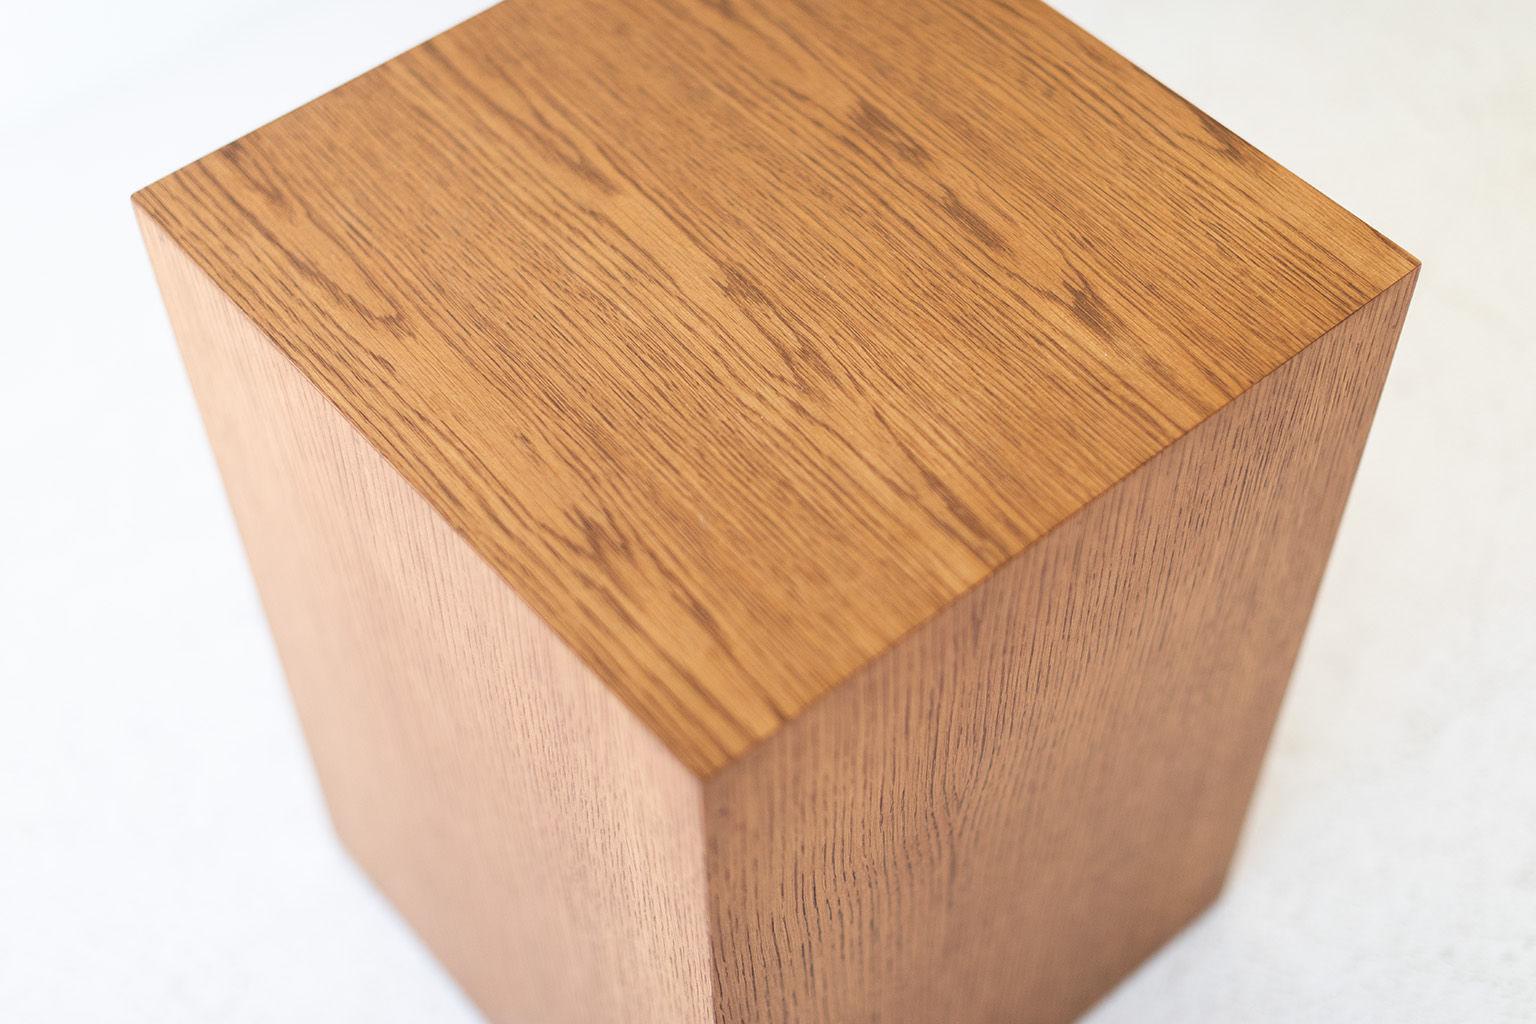 Cette table d'appoint moderne en chêne est fabriquée au cœur de l'Ohio avec du bois d'origine locale. Chaque table est une boîte à onglets fabriquée à la main à partir d'un placage de chêne blanc et finie avec une magnifique finition mate de qualité